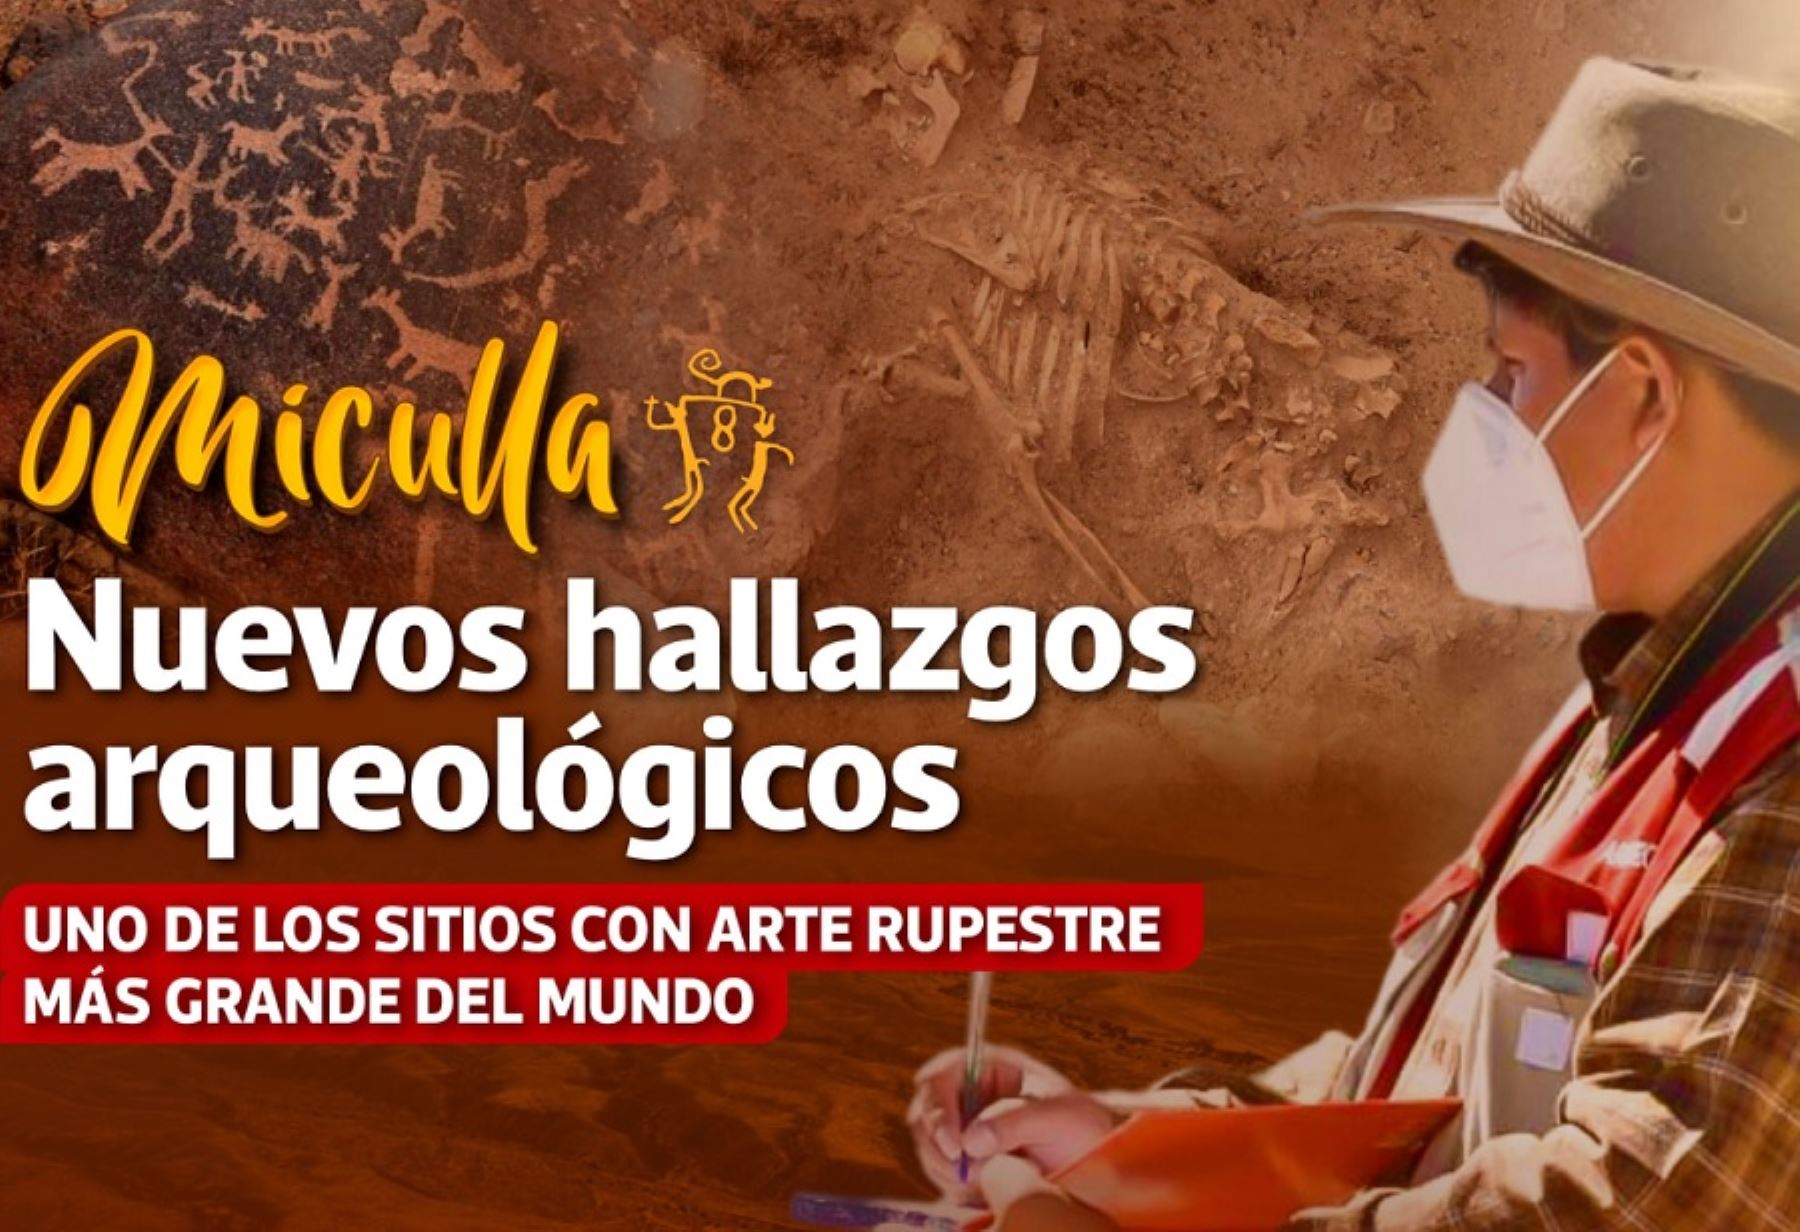 Formidable hallazgo de 12 osamentas pertenecientes a pobladores prehispánicos y más de 2,400 petroglifos de una antigüedad de 1,500 años antes de Cristo, en el sitio arqueológico Miculla-Pachía, ubicado en la región Tacna. Foto: Gobierno Regional de Tacna.